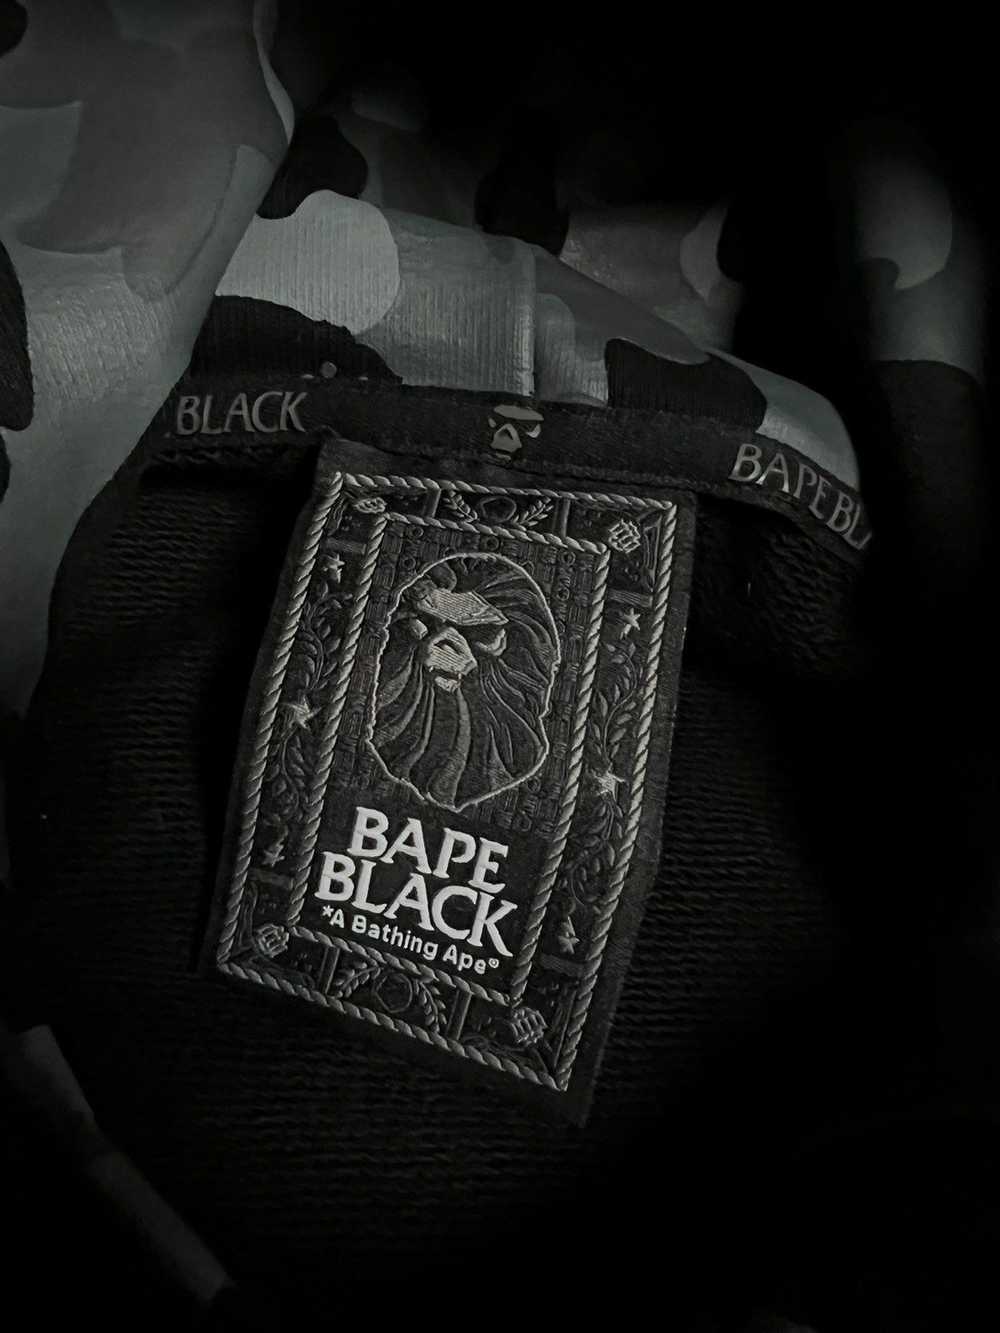 Bape BAPE Black by A Bathing Ape Swarovski Pullov… - image 5